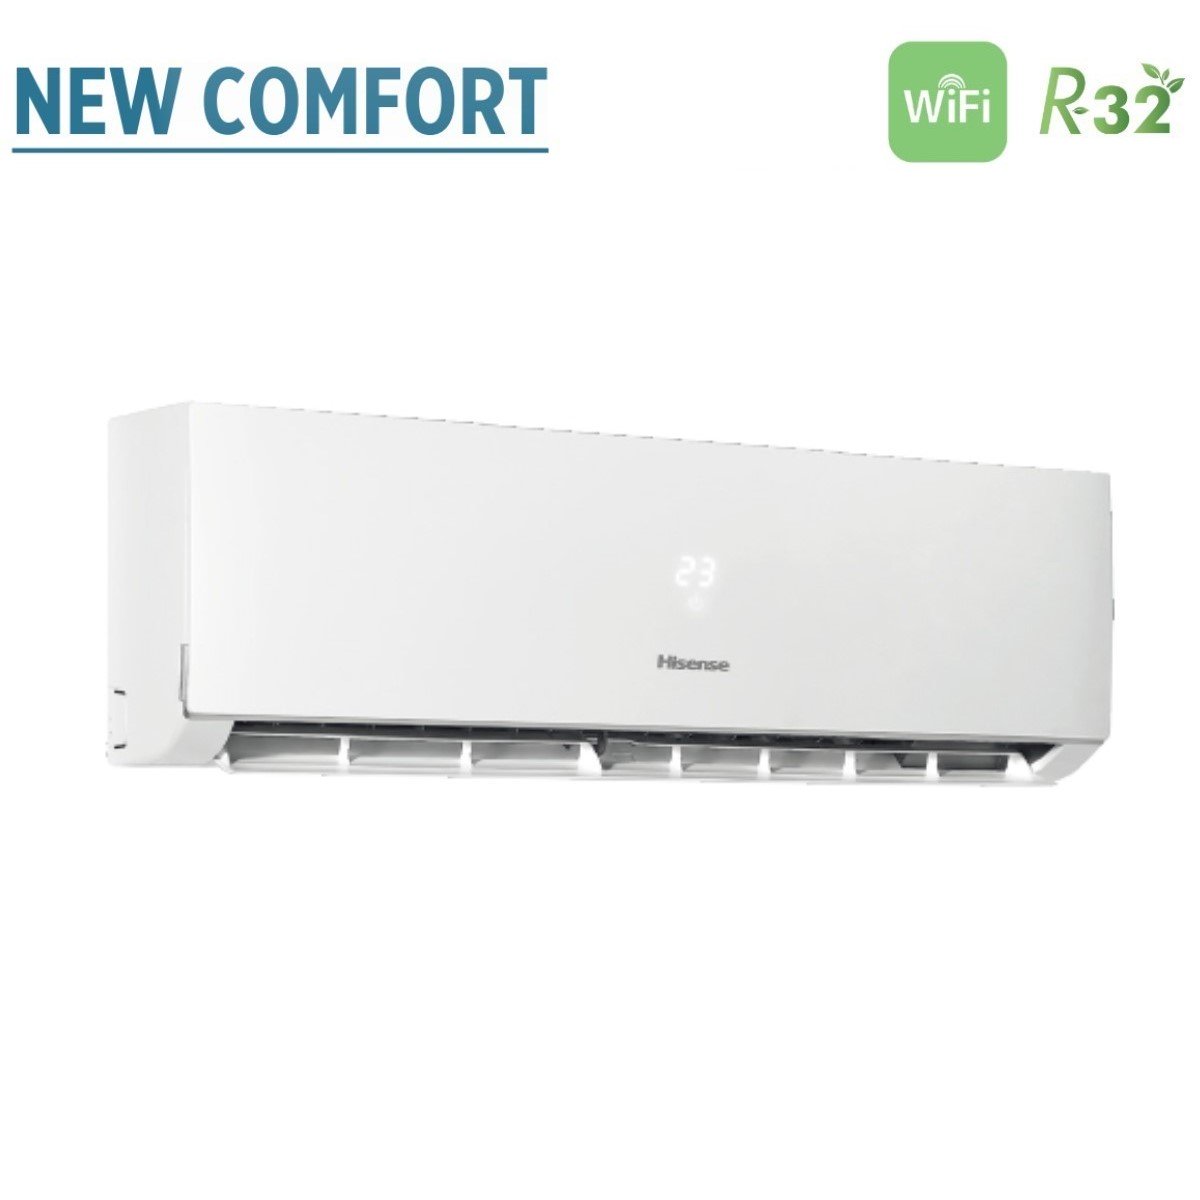 immagine-4-hisense-climatizzatore-condizionatore-hisense-trial-split-inverter-serie-new-comfort-999-con-3amw52u4rja-r-32-wi-fi-optional-900090009000